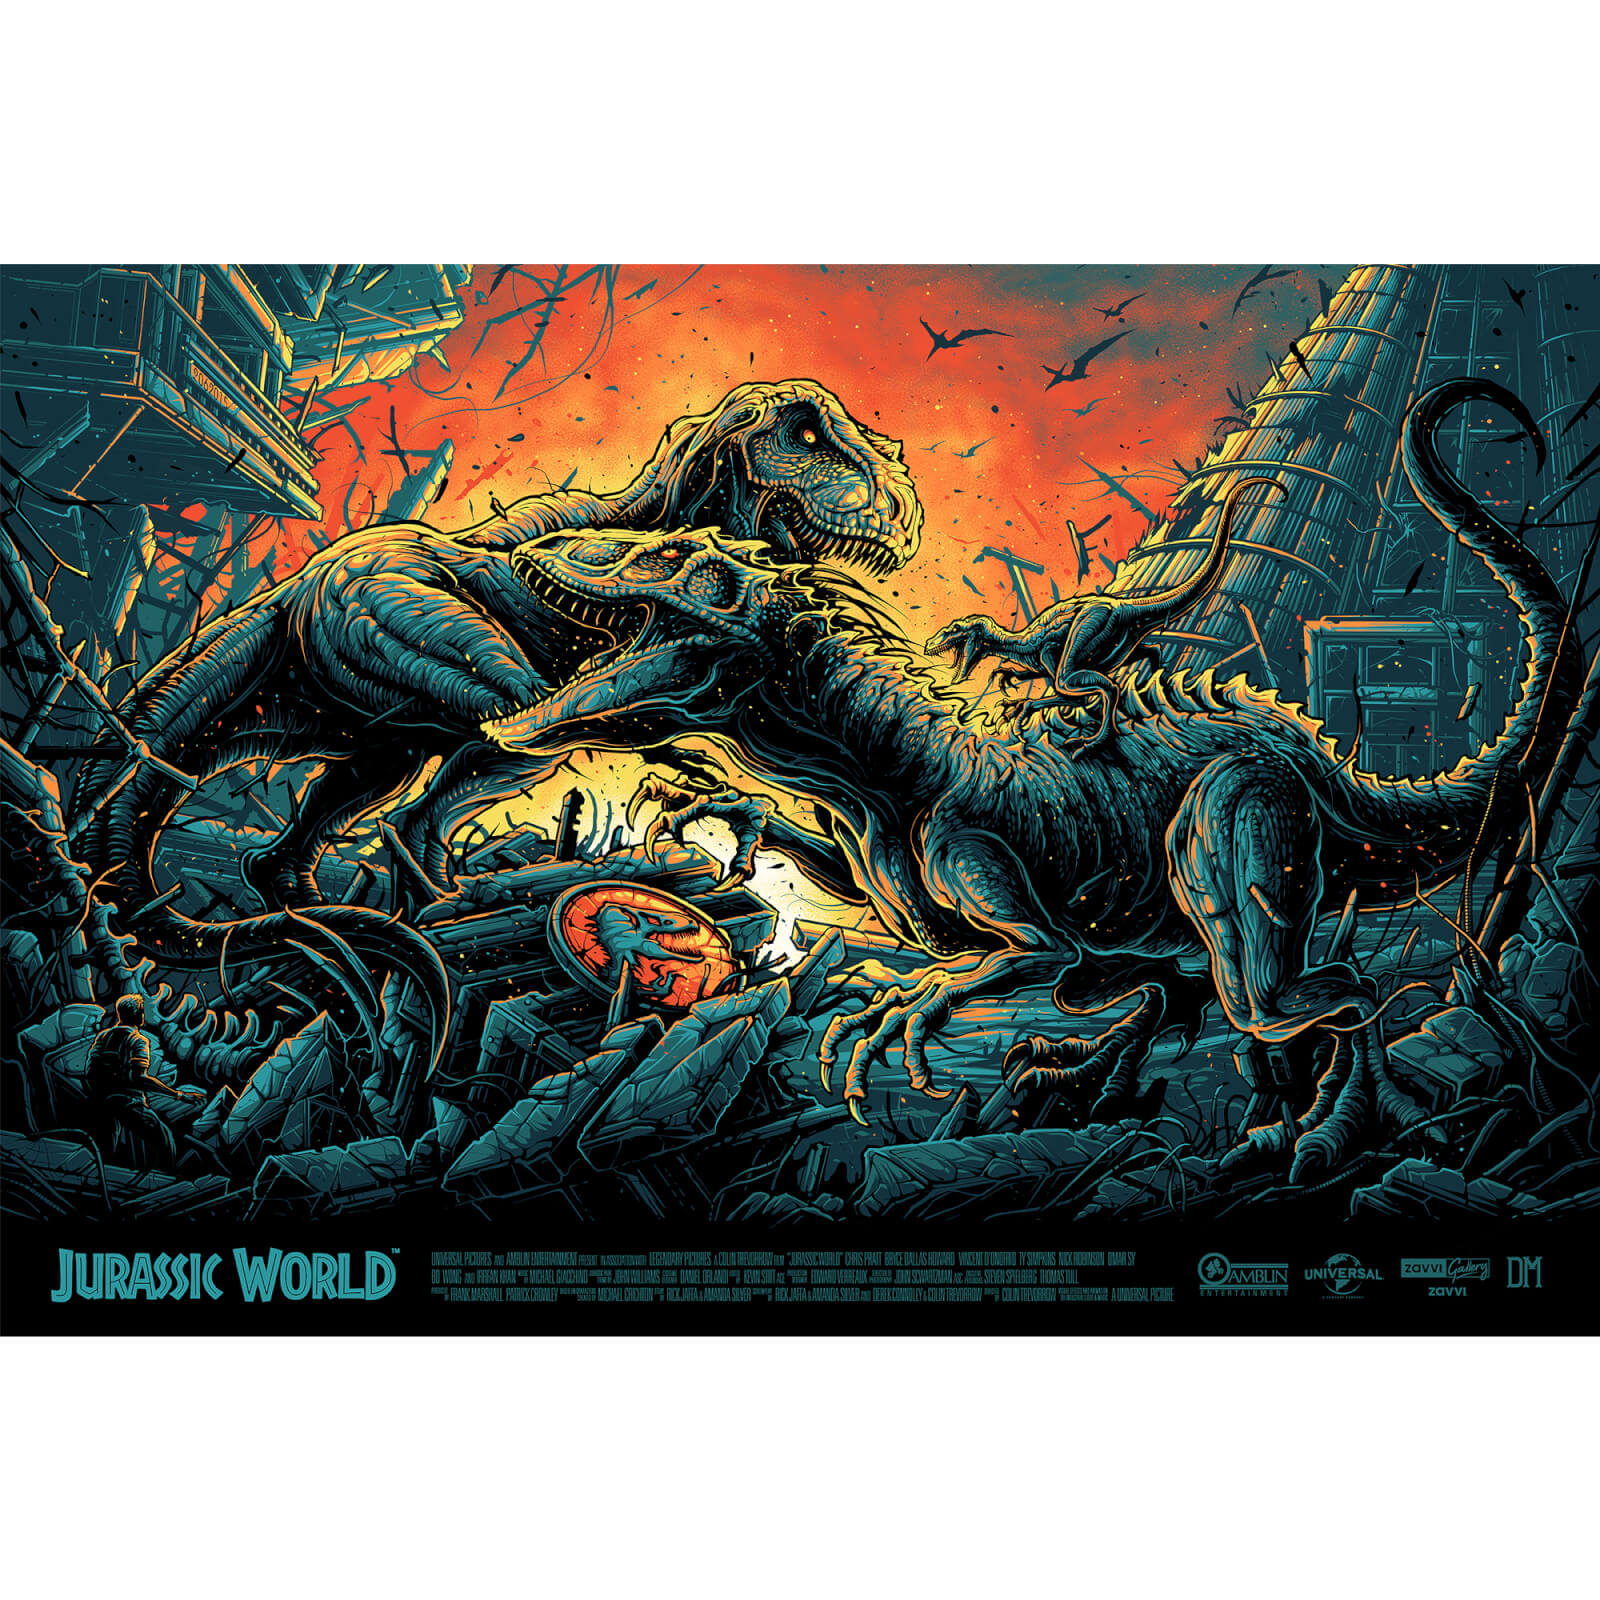 Impression Jurassic World 91*61 cm Zavvi Exclusif - Dan Mumford